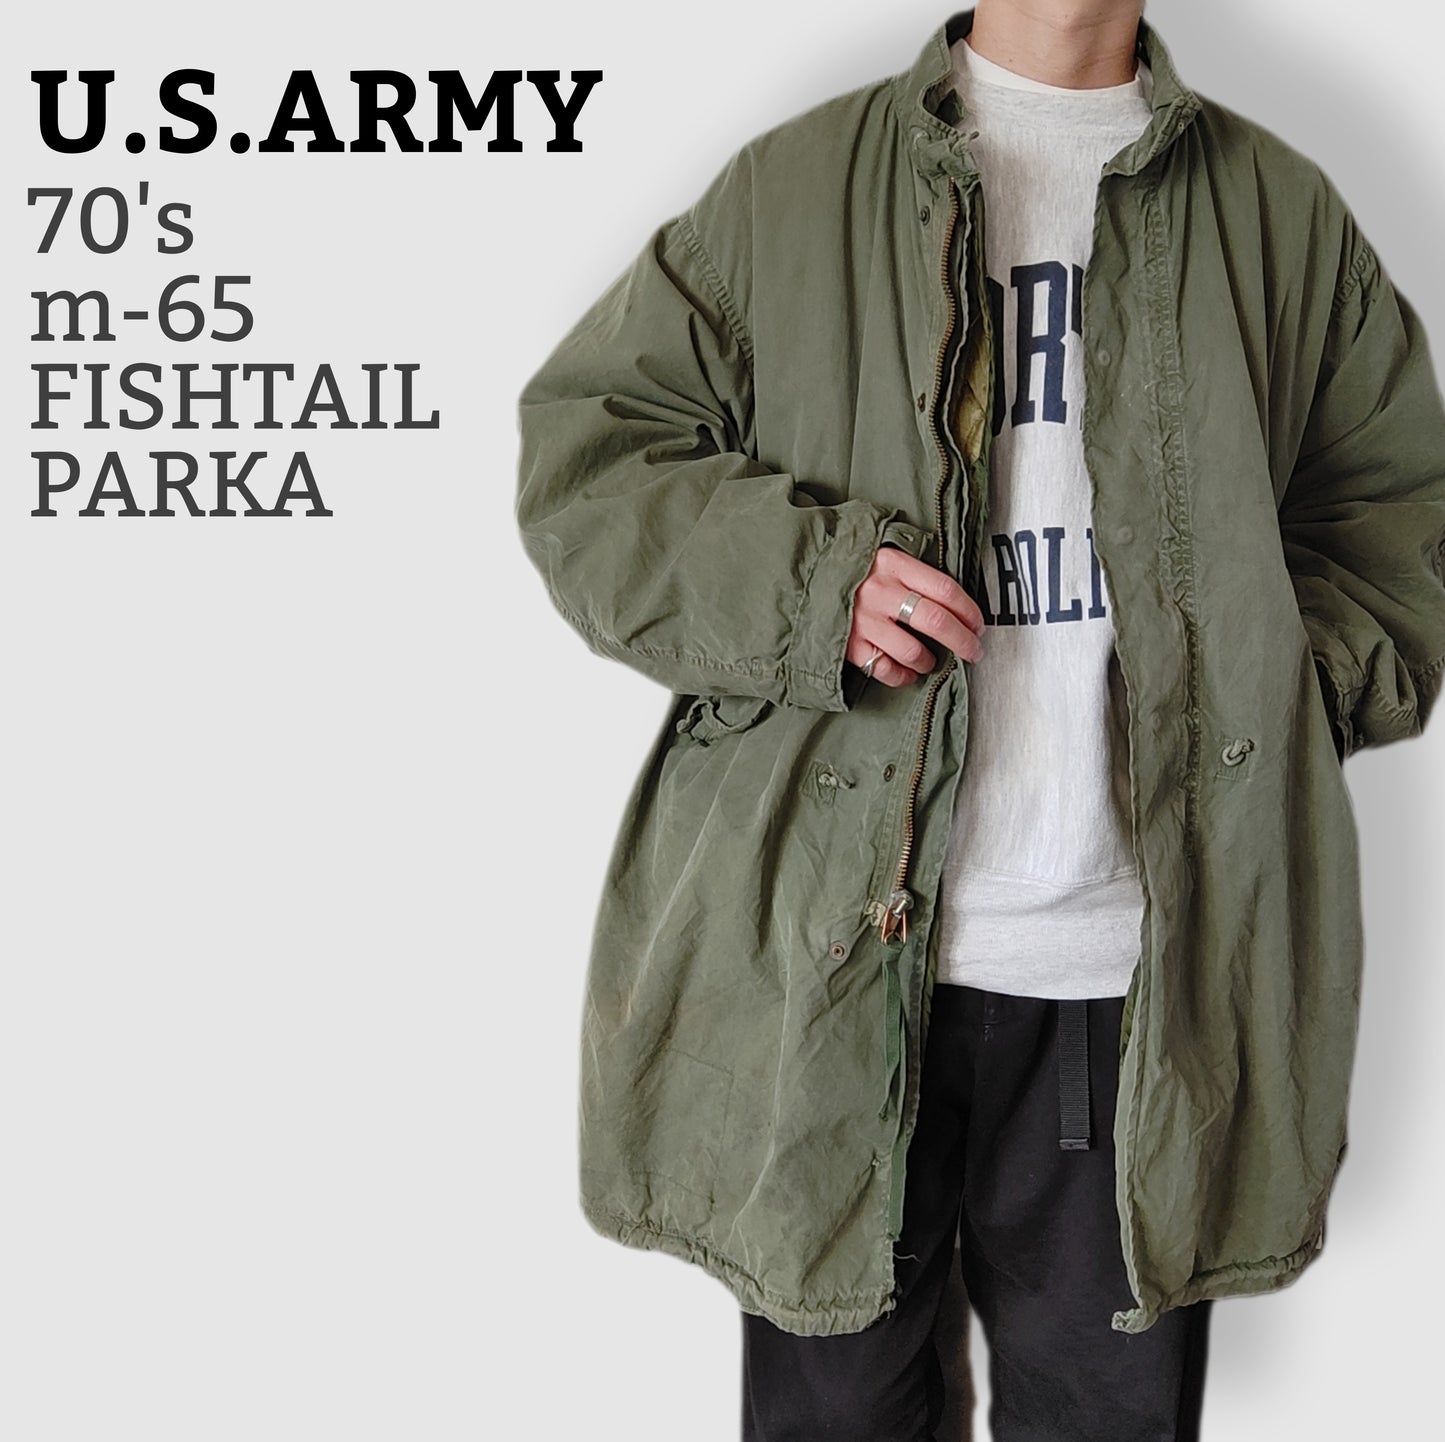 [U.S.ARMY] M-65 fishtail parka